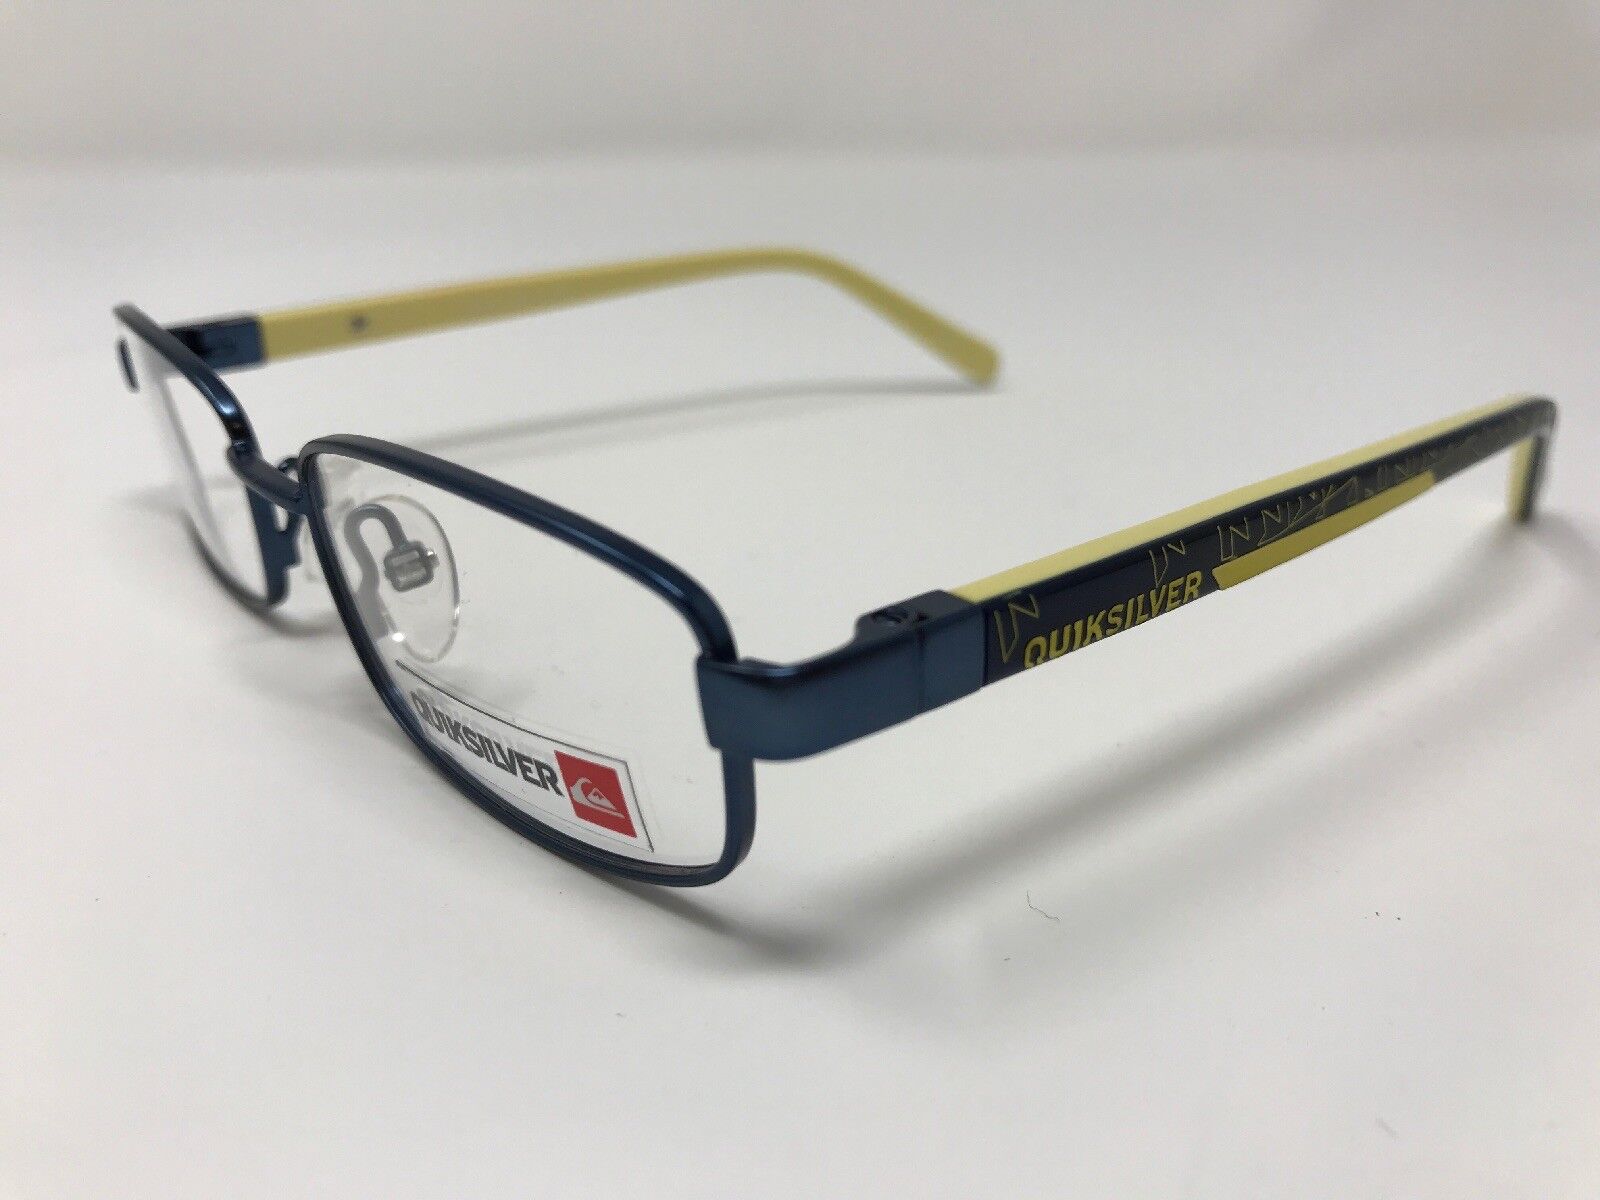 Great Deal Quiksilver eyeglass Frame KIDS BOYS Navy Metallic Blue Yellow DA50